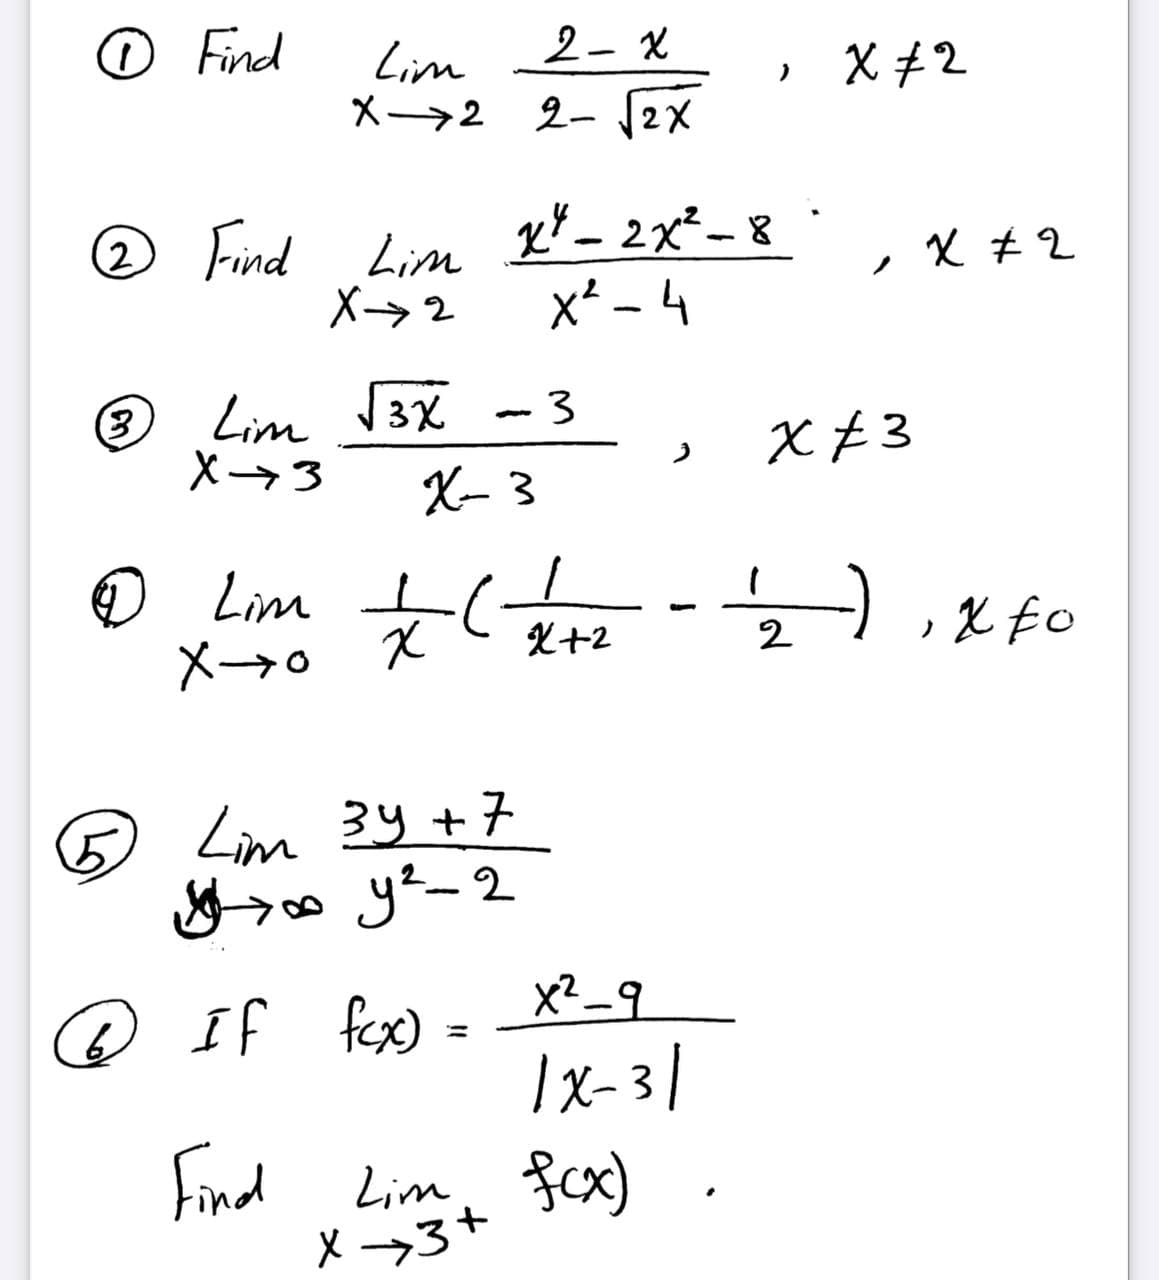 o Find
2- X
Lim
X→2 2- 12X
» X+2
2 Find Lim
X→2
x* _ 2x²- 8
x* - 4
父#2
Lim V3X
X3
X- 3
X £3
© Lim o
X+2
2
X-→o X
5.
Lim 34+7
x? _9
@ If fex)
%3D
|x-3 |
Find Lim fcx)
X -→3+
